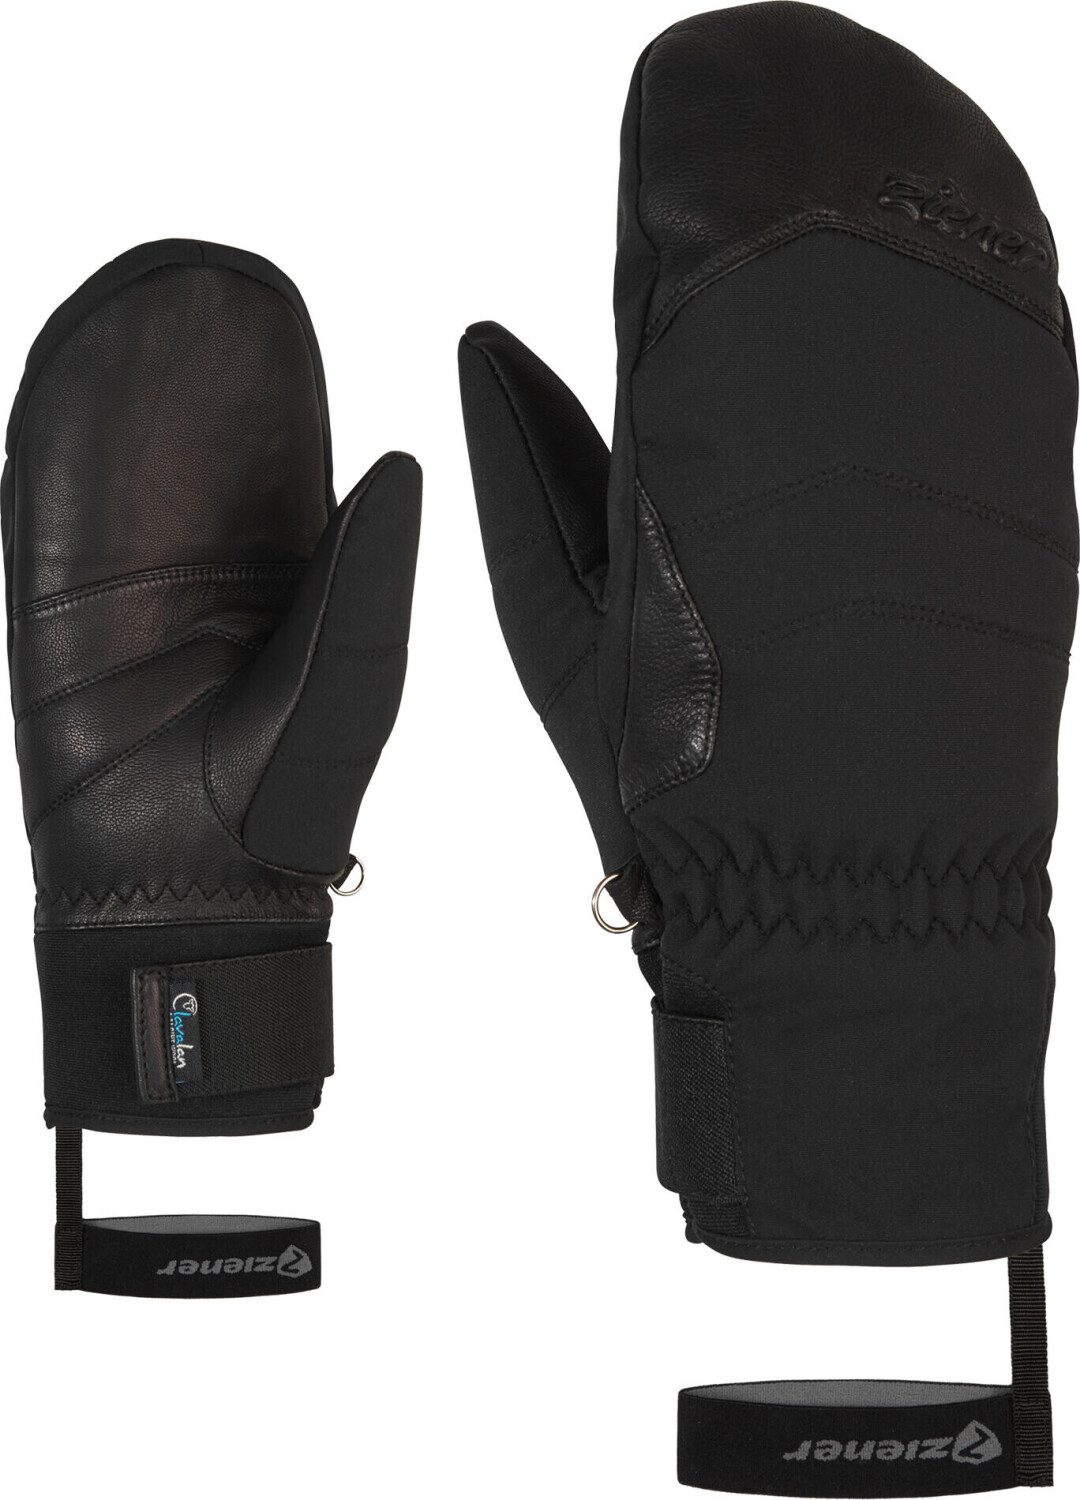 Ziener Kalea ASR AW Mitten Lady Glove black ab 59,75 € | Preisvergleich bei